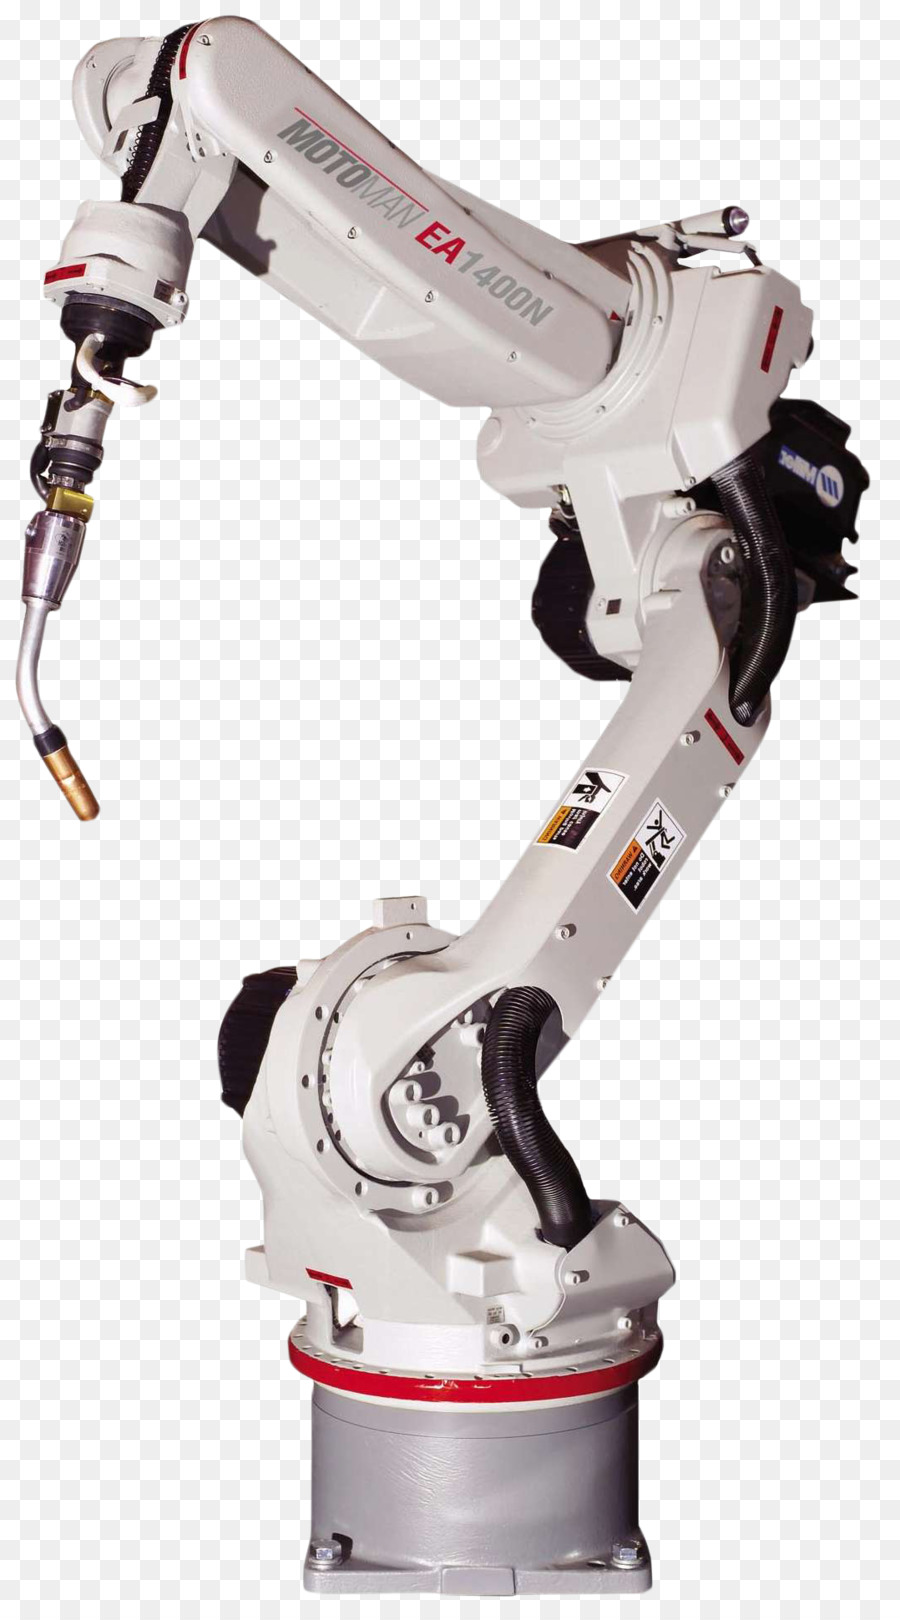 Robot công nghiệp tự động máy điện tử - fanuc robot png công nghiệp